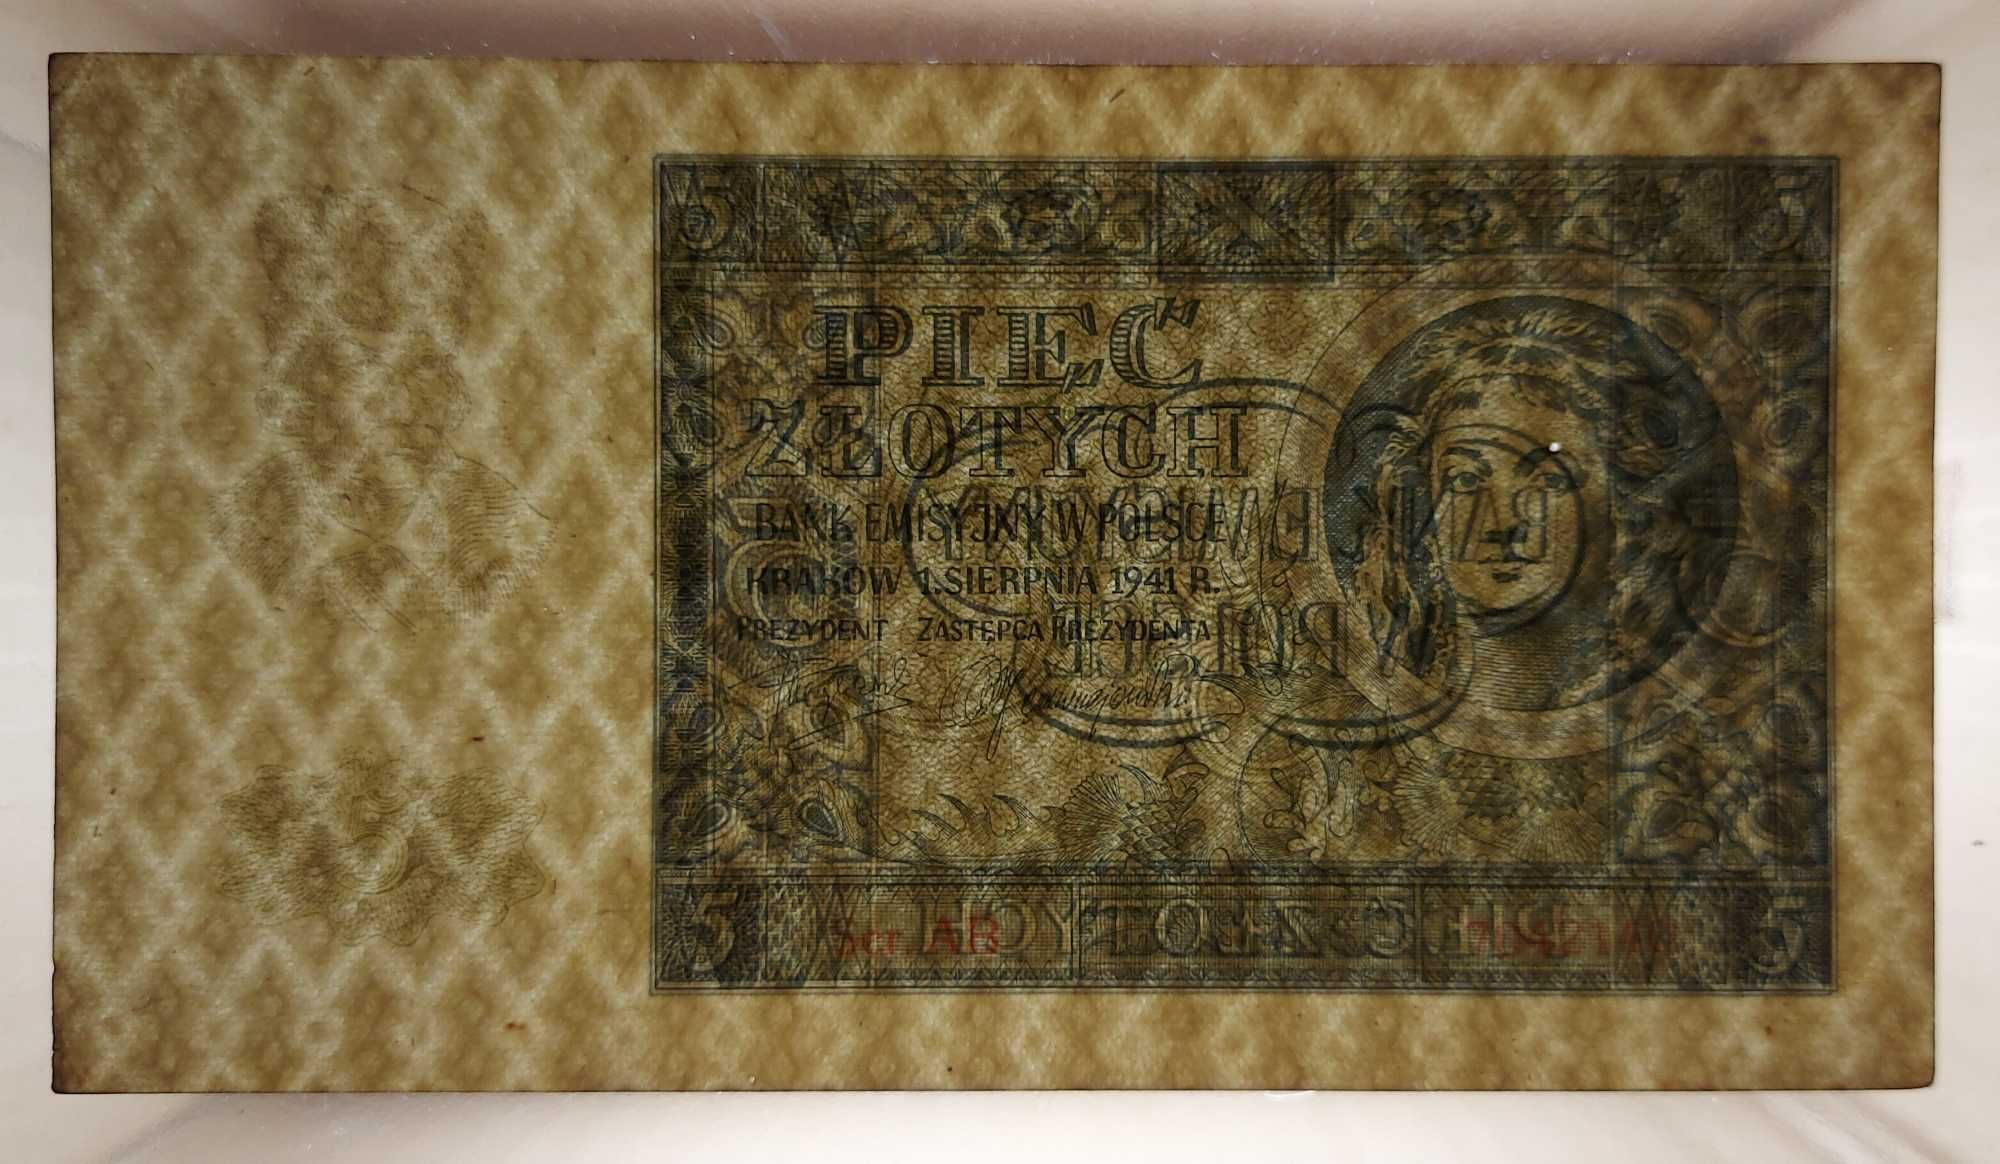 Banknot 5 złotych z 1941 roku.